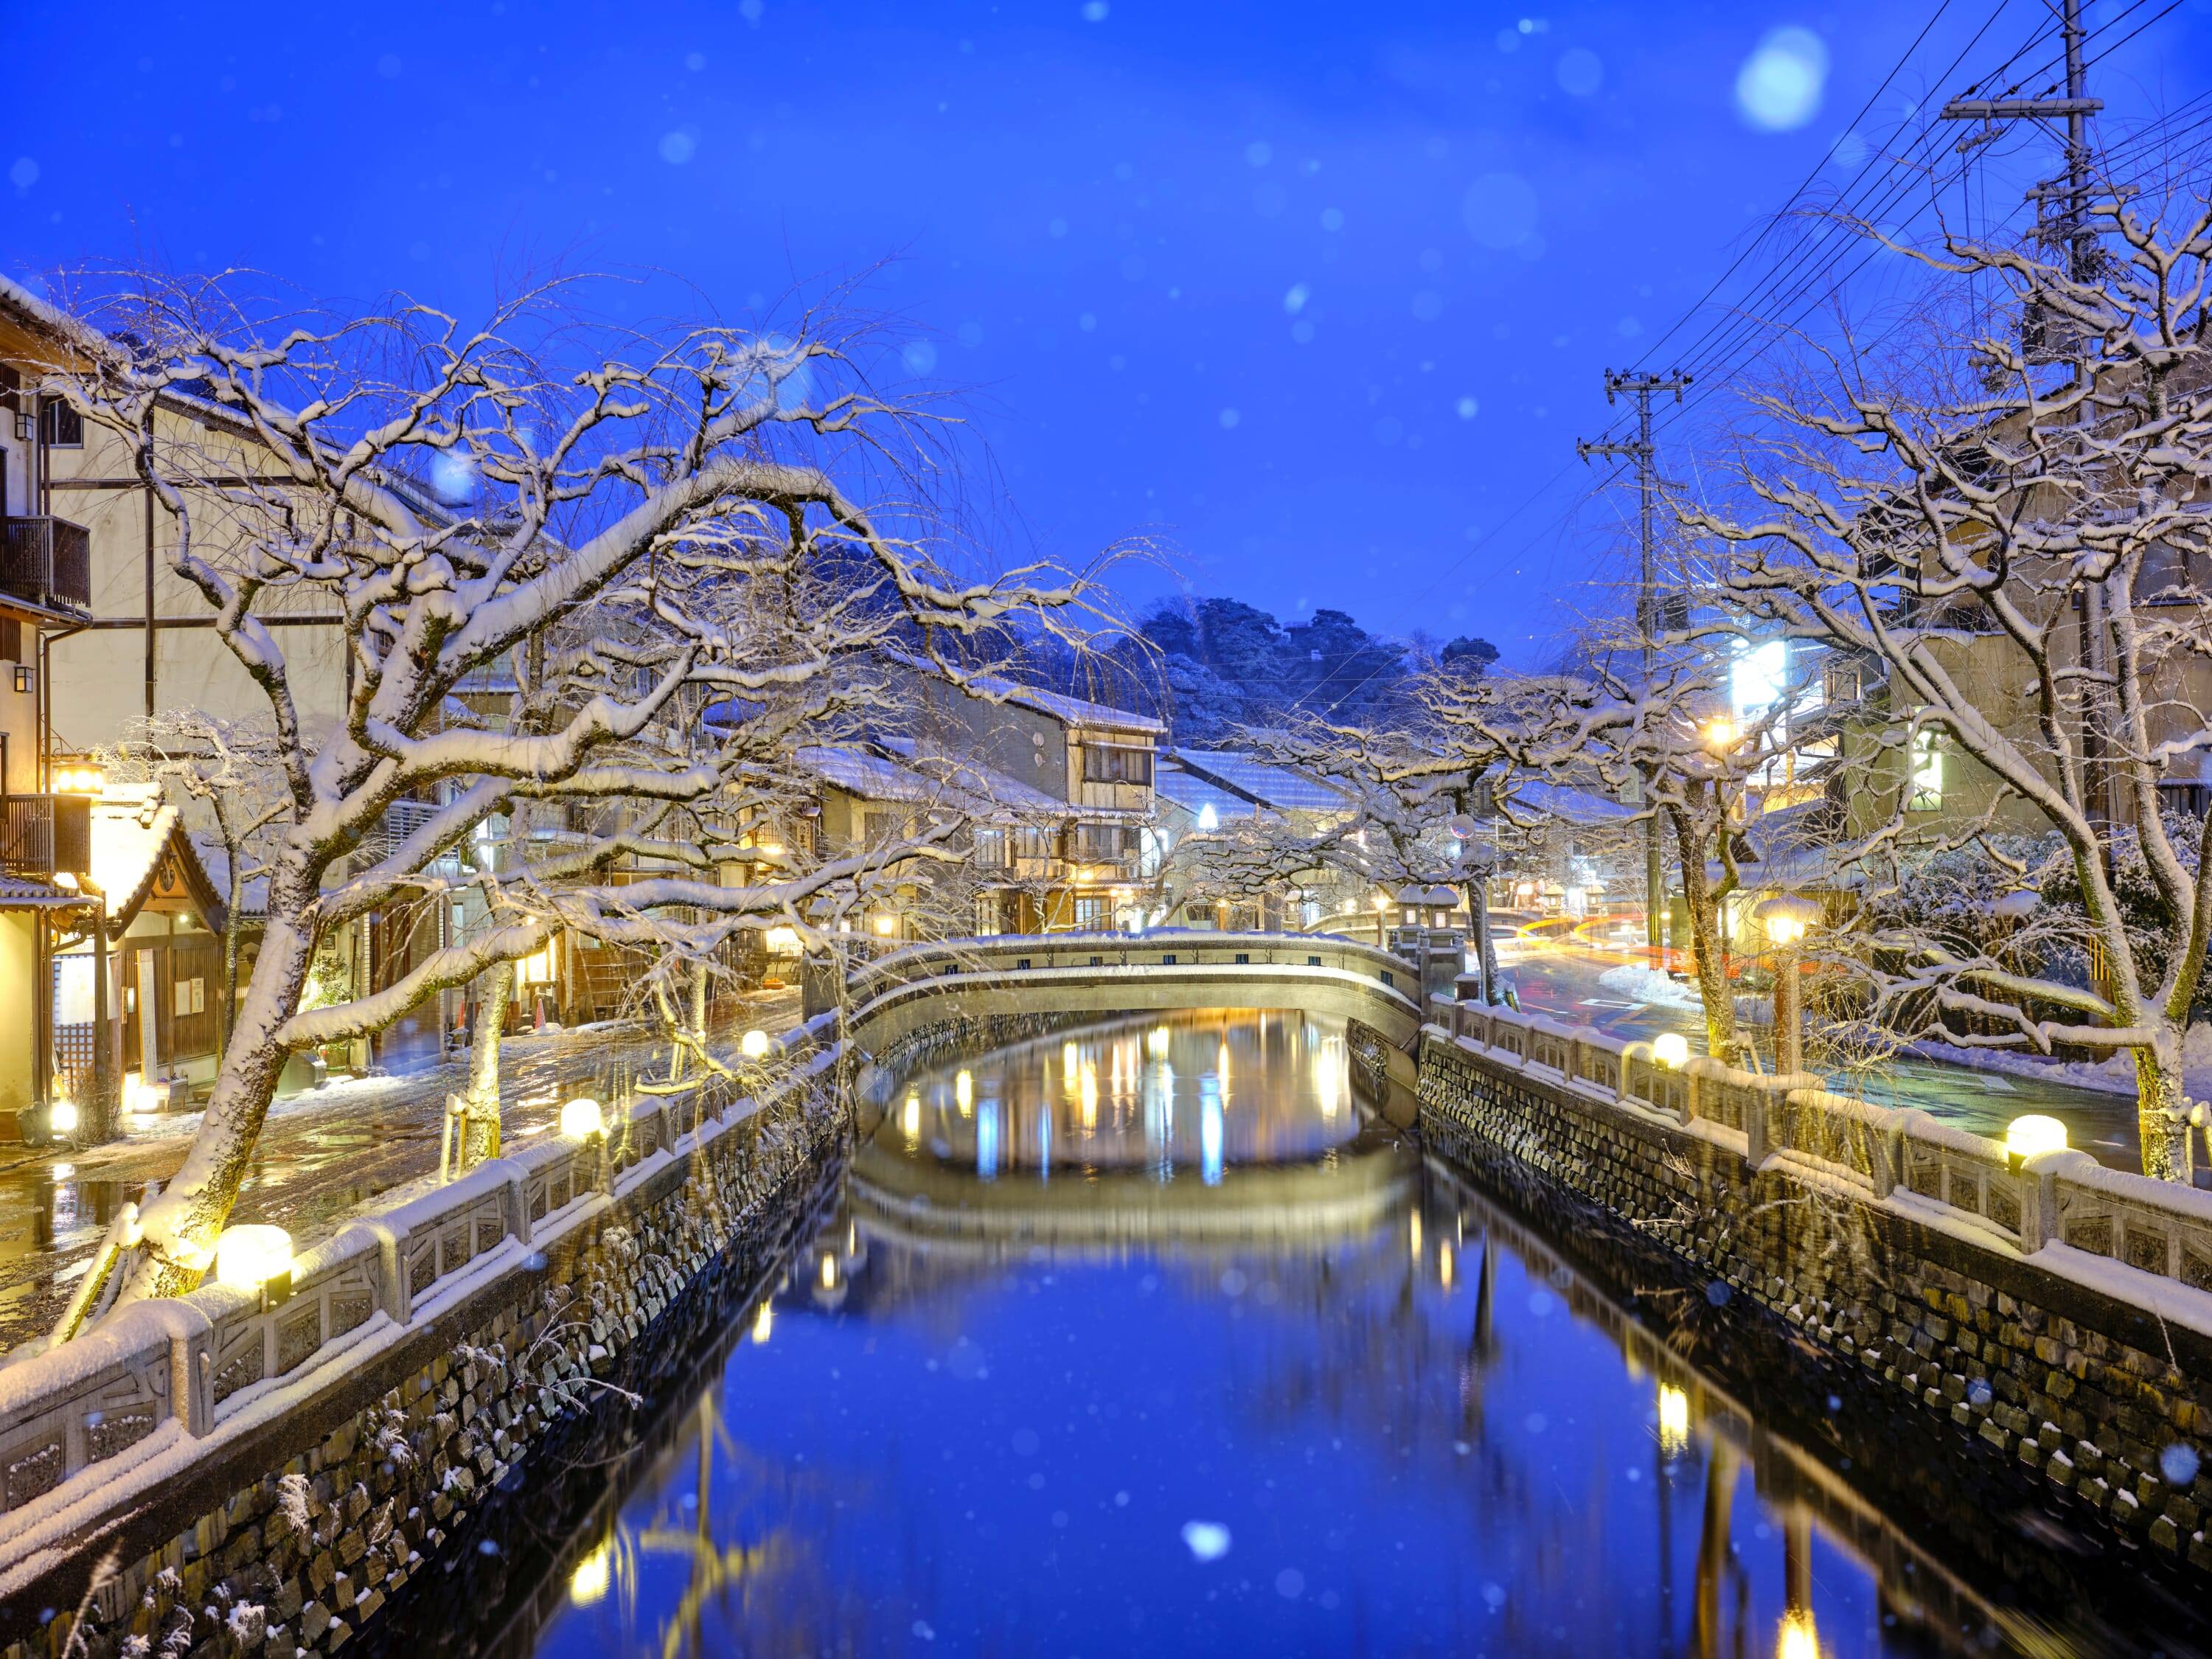 Kinosaki Onsen - Japan's Best Onsen Towns